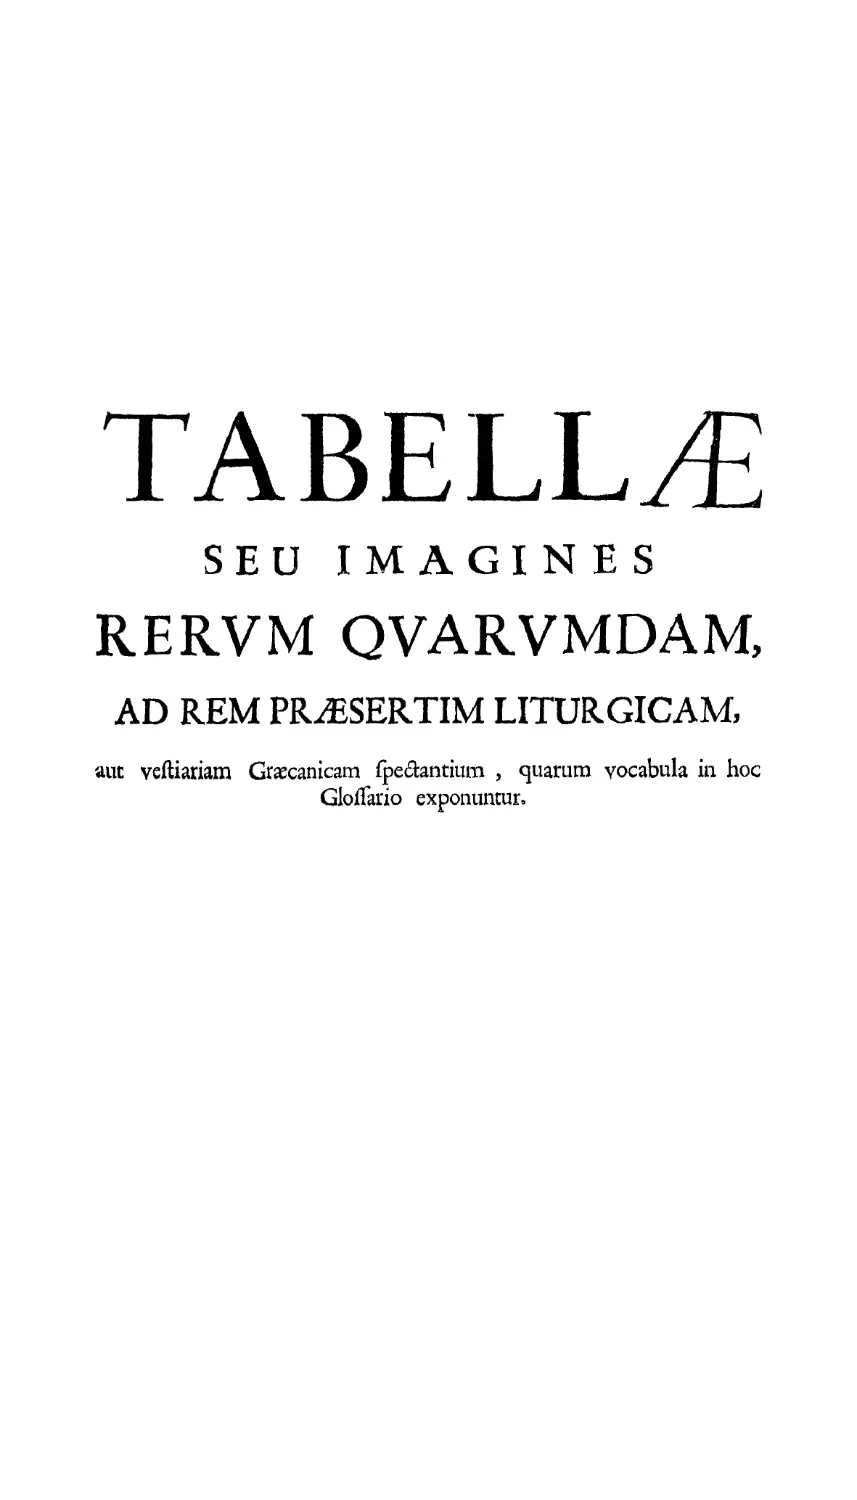 Explicatio Tavellarum
Explicatio tabellarum